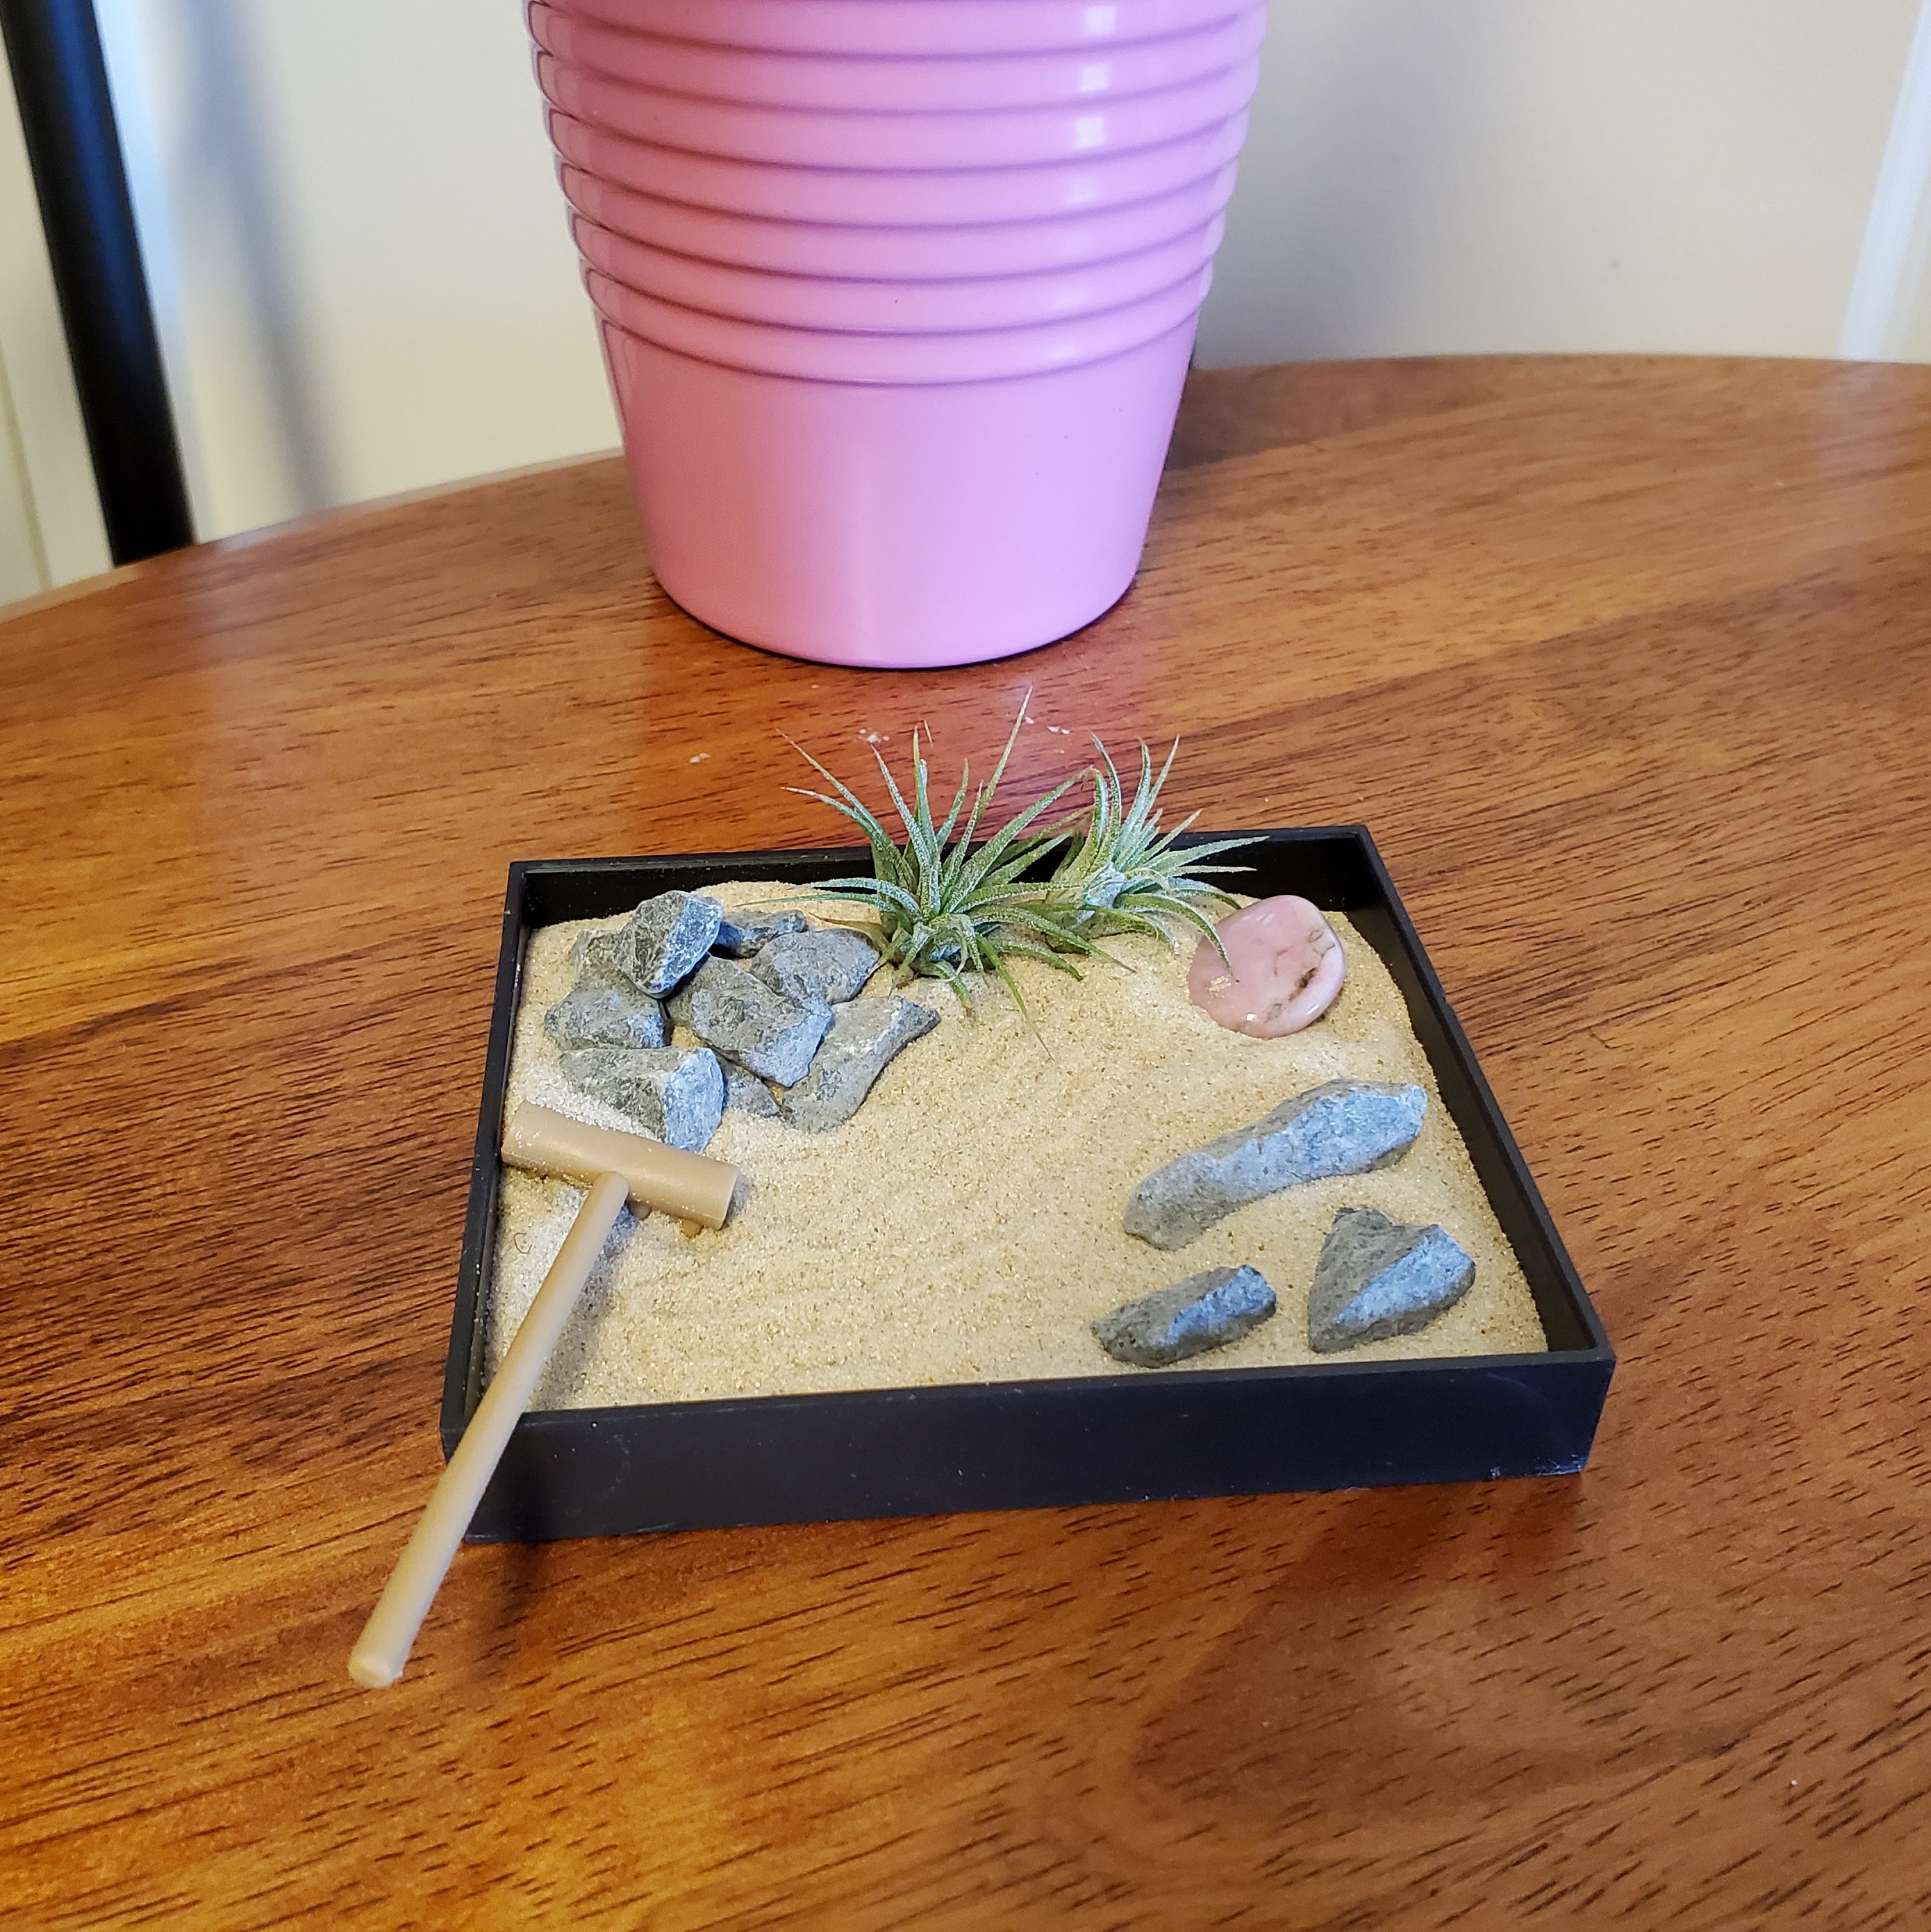 Create a Miniature Zen Garden Container